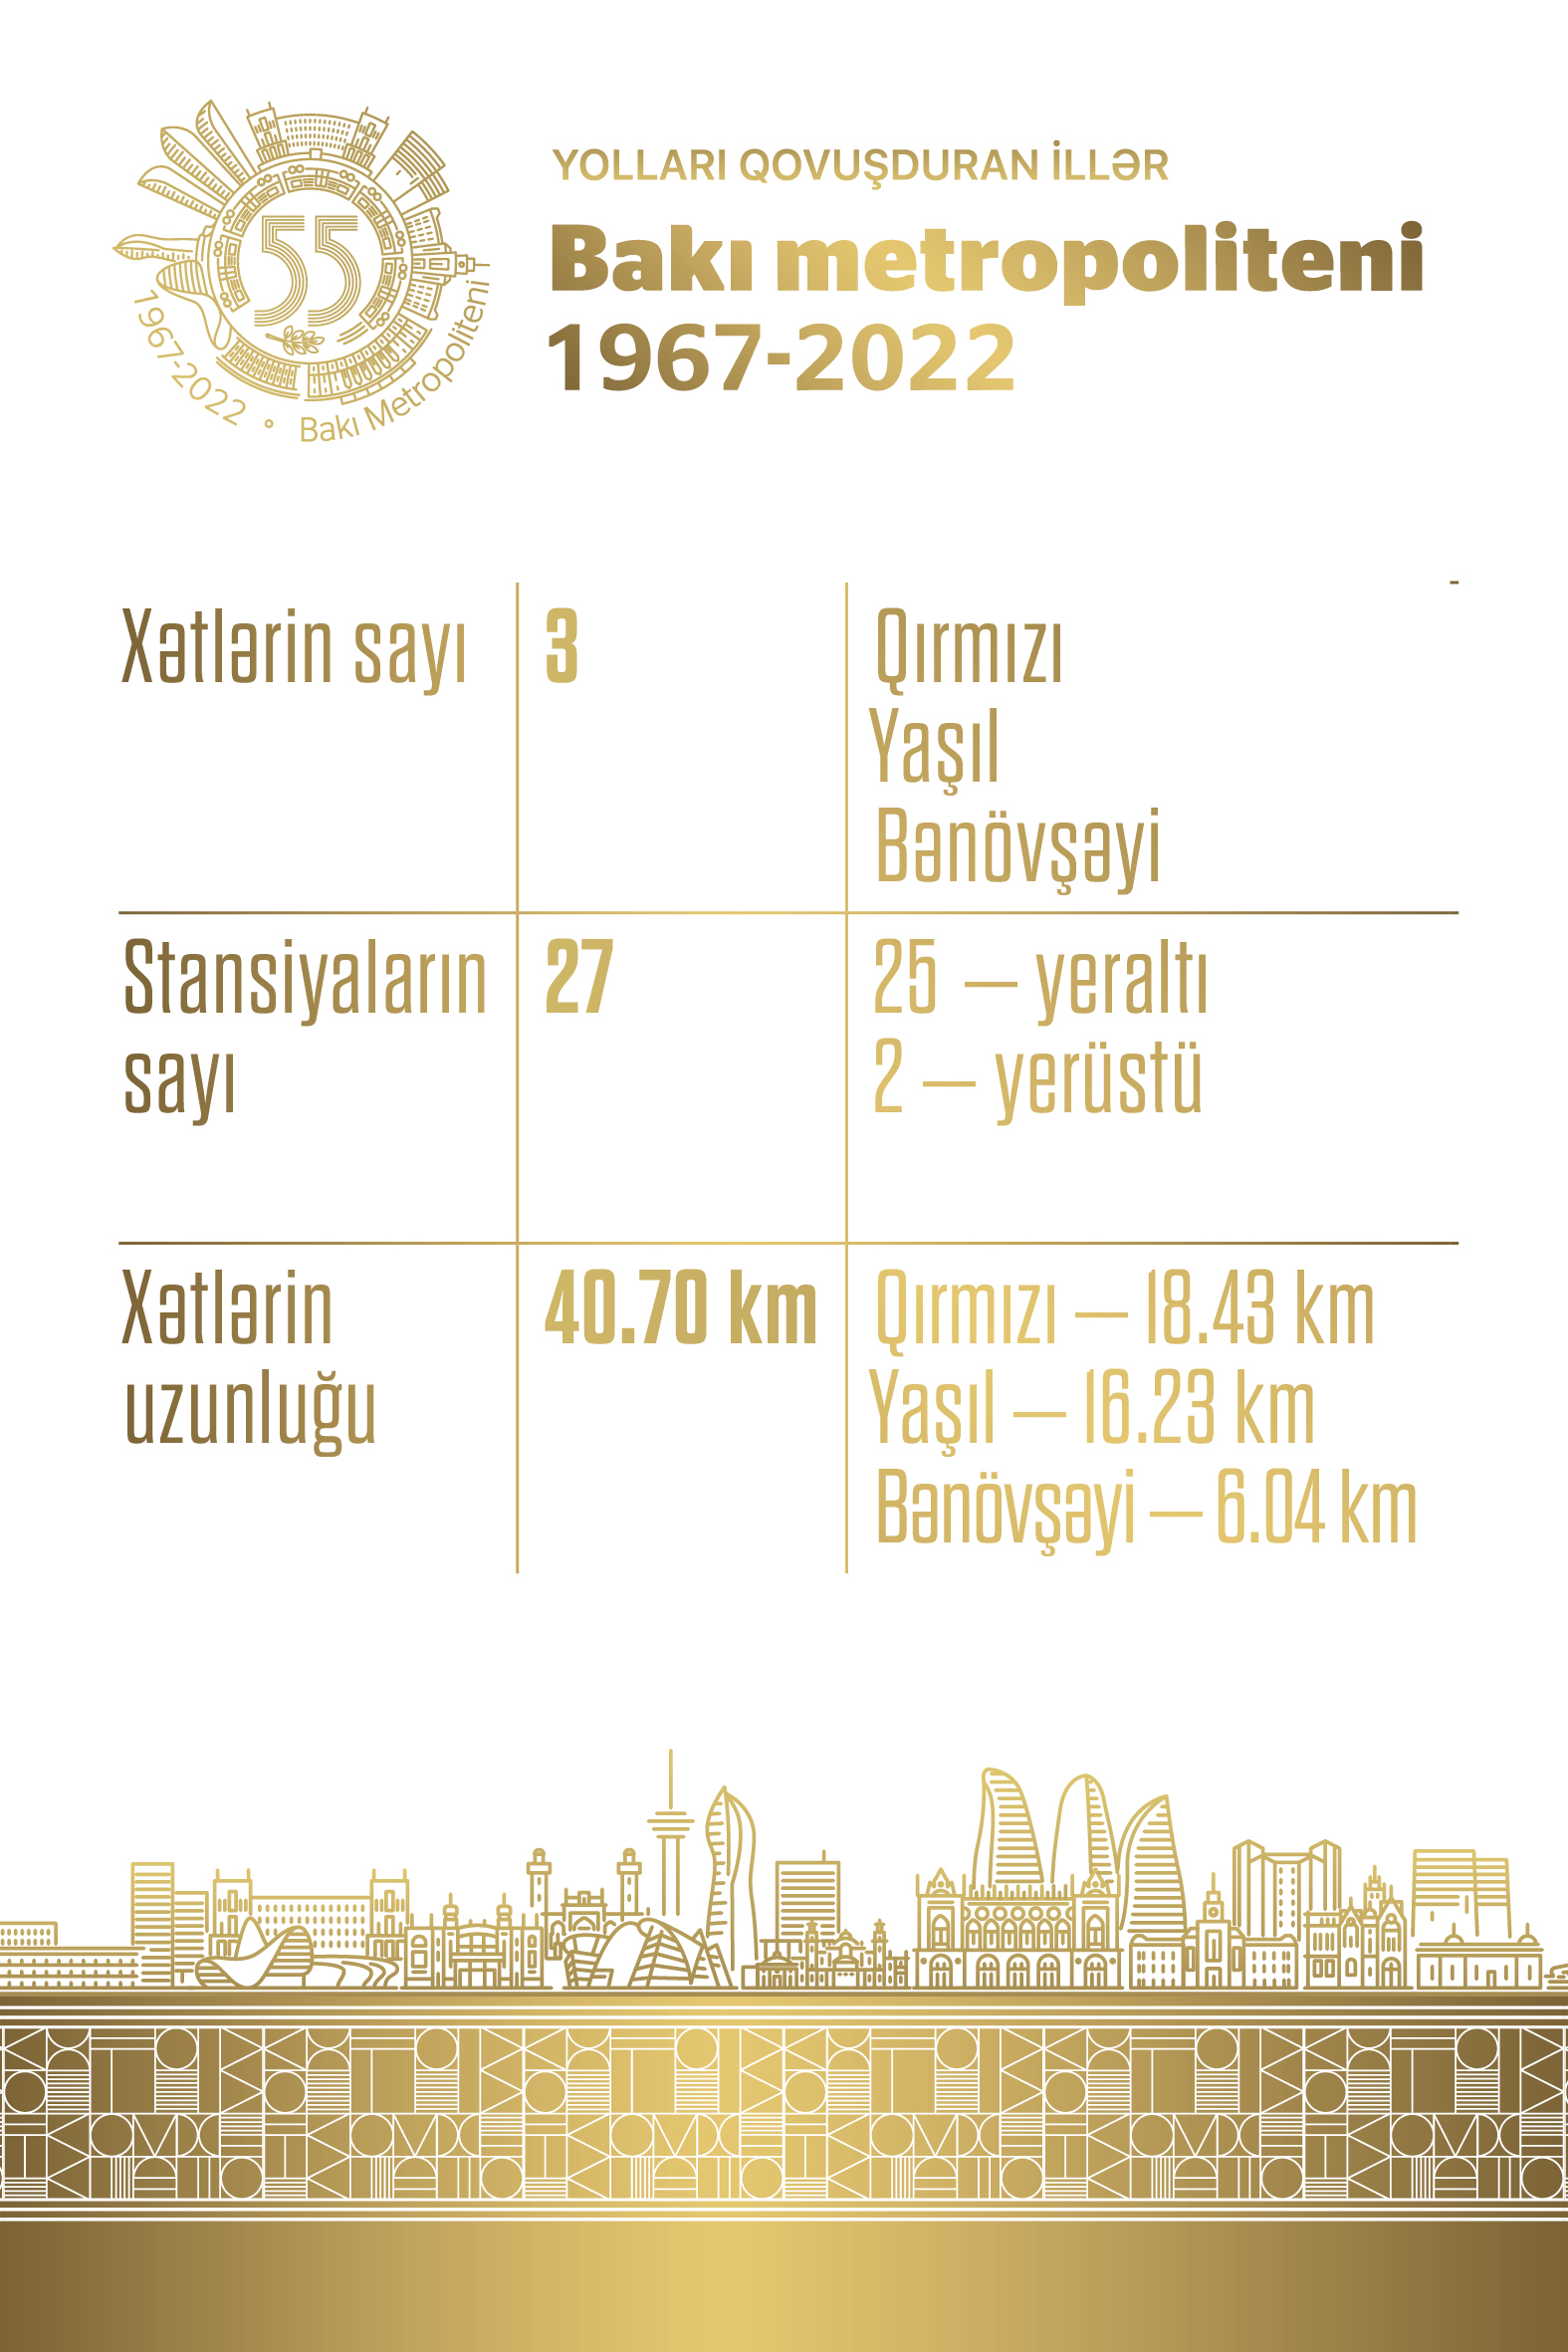 Bakı metropoliteni 1967-2022